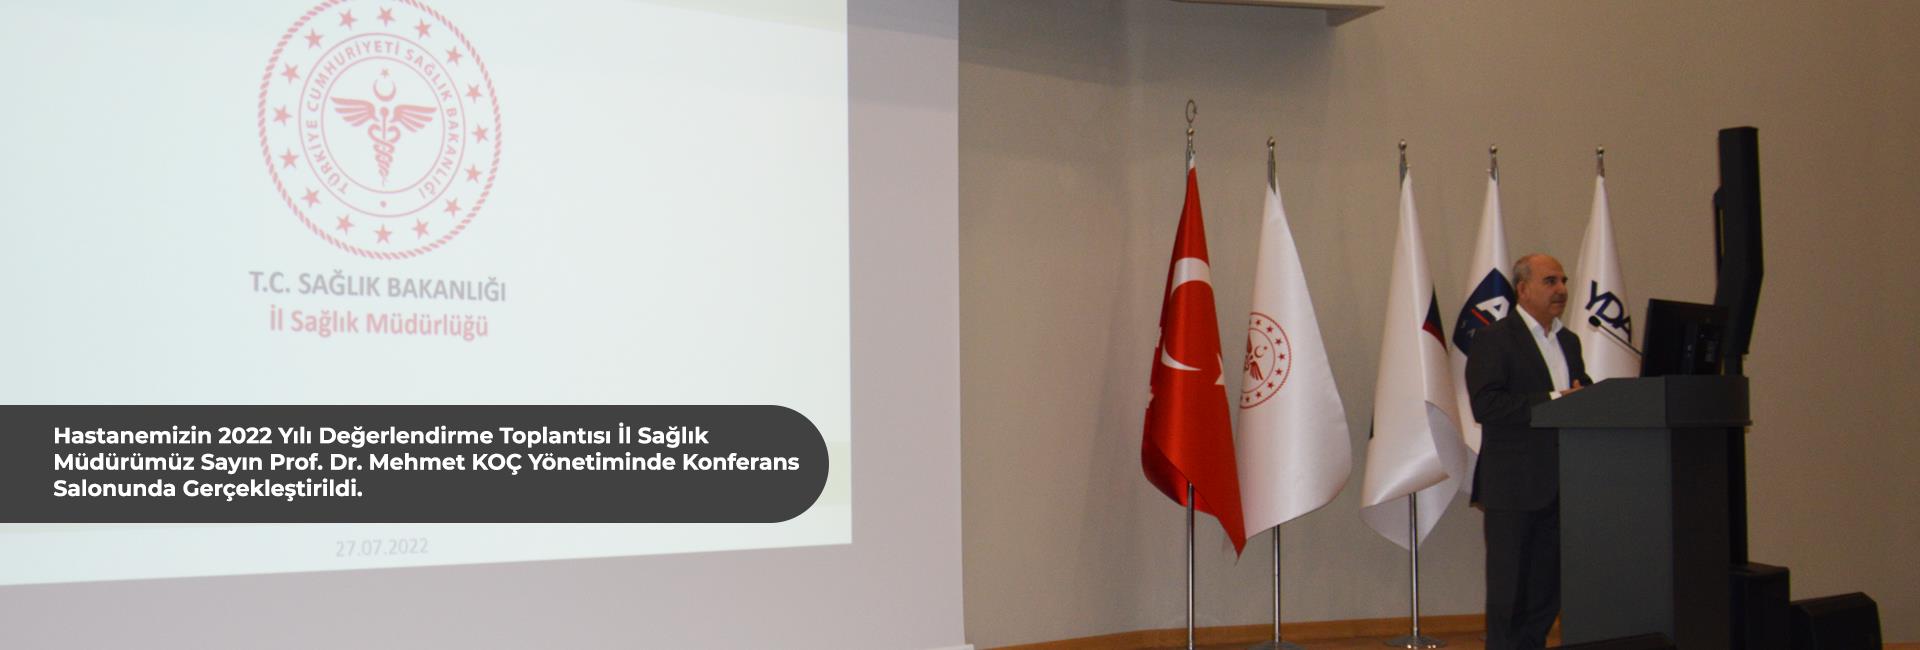 Hastanemizin 2022 yılı ilk altı aylık değerlendirme toplantısı İl Sağlık Müdürümüz Sayın Prof. Dr. Mehmet KOÇ yönetiminde konferans salonunda gerçekleştirildi. 